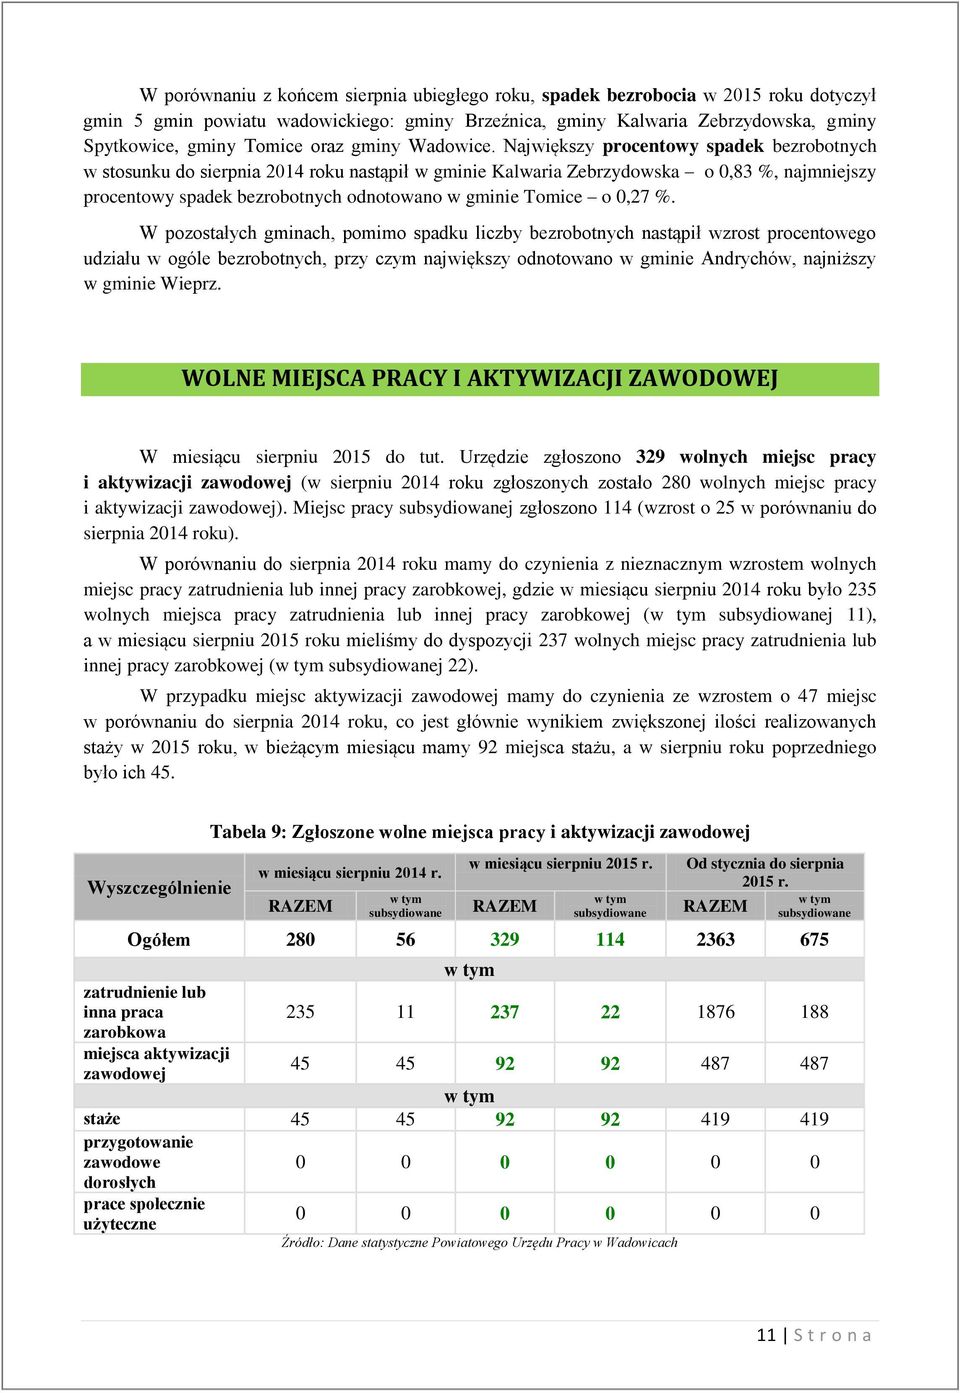 Największy procentowy spadek bezrobotnych w stosunku do sierpnia 2014 roku nastąpił w gminie Kalwaria Zebrzydowska o 0,83 %, najmniejszy procentowy spadek bezrobotnych odnotowano w gminie Tomice o